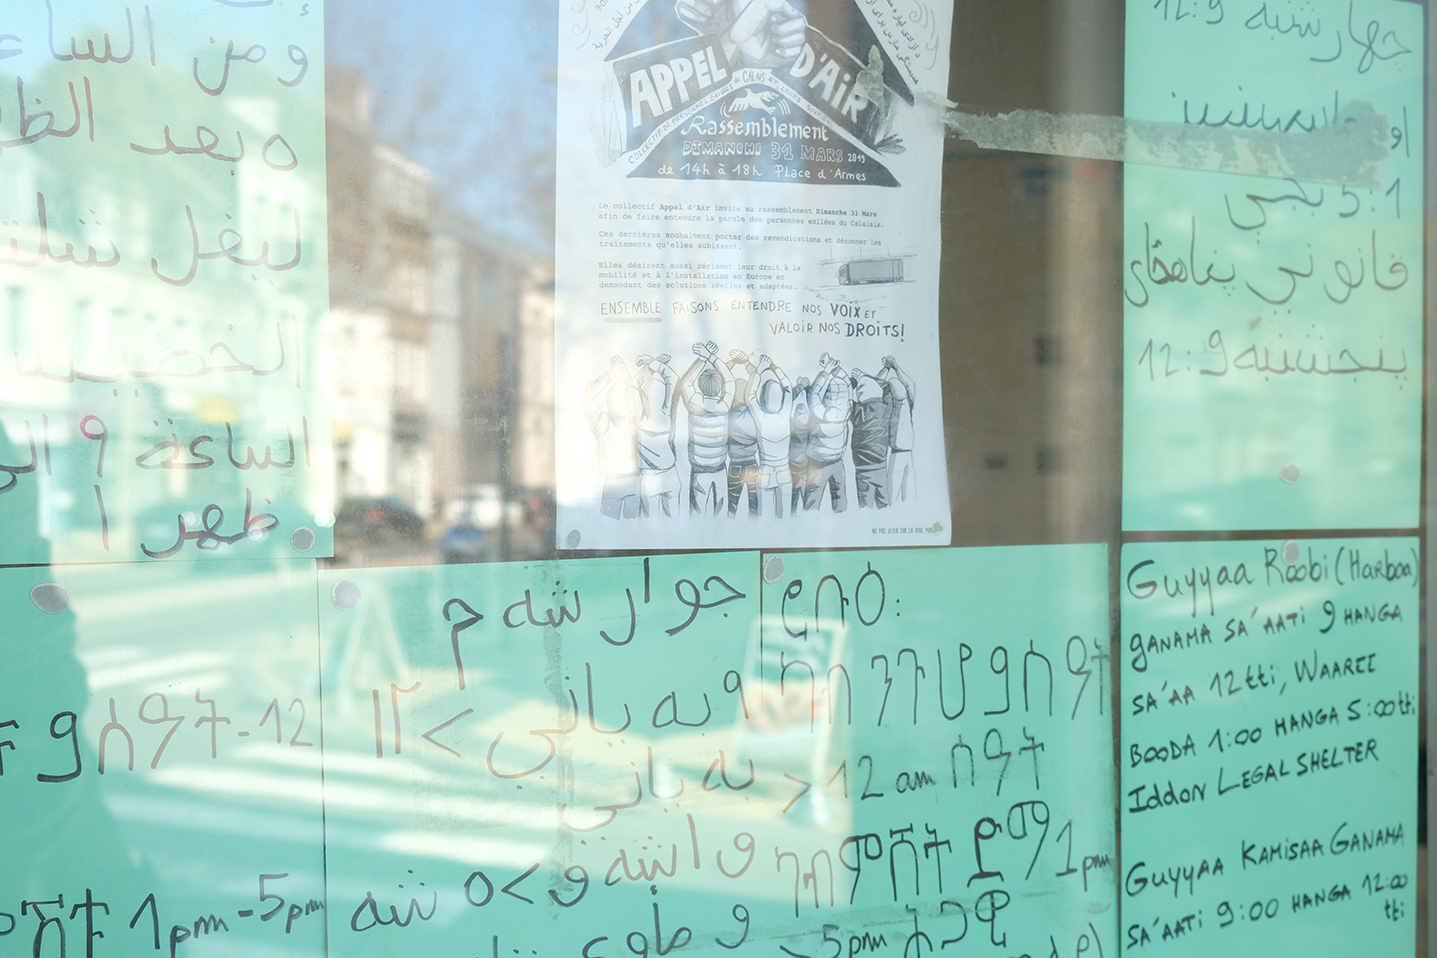 A l’entrée du local, l’affiche annonce la manifestation de dimanche 31 mars, encerclée par des feuilles où des explications sont inscrites dans différentes langues parlées par les exilés.